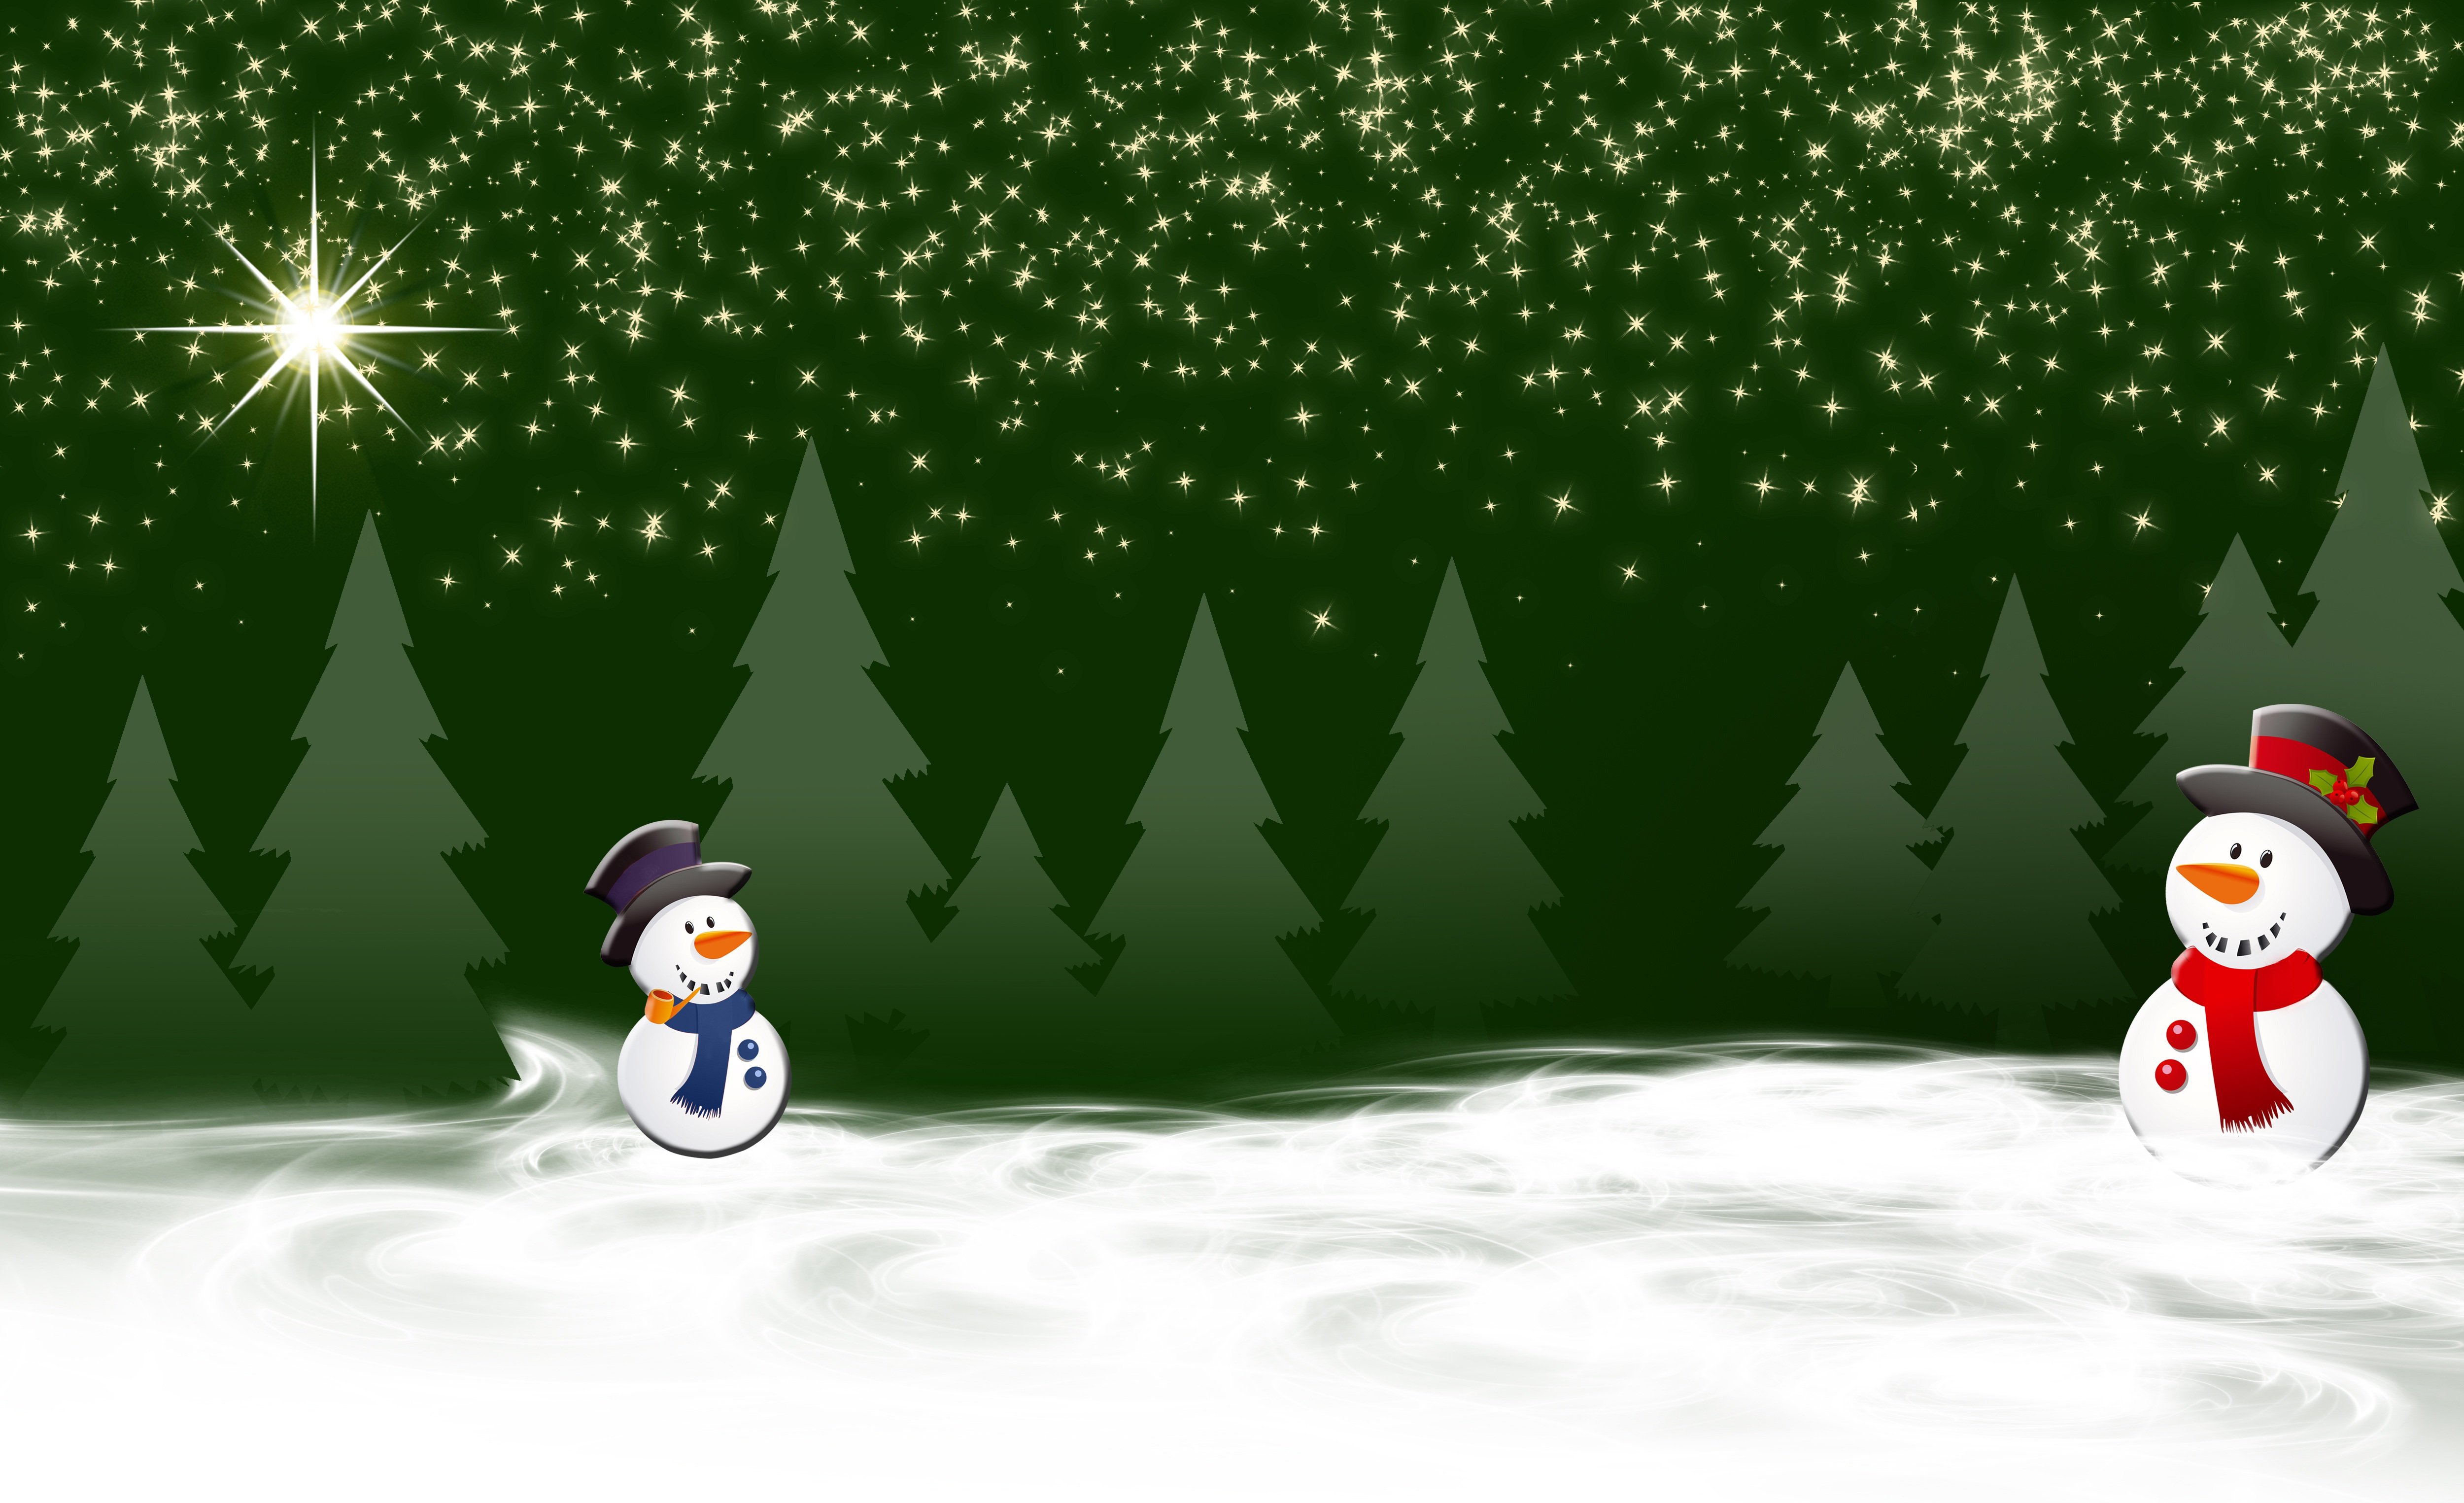 Скачать обои бесплатно Зима, Звезды, Снег, Рождество, Снеговик, Художественные картинка на рабочий стол ПК